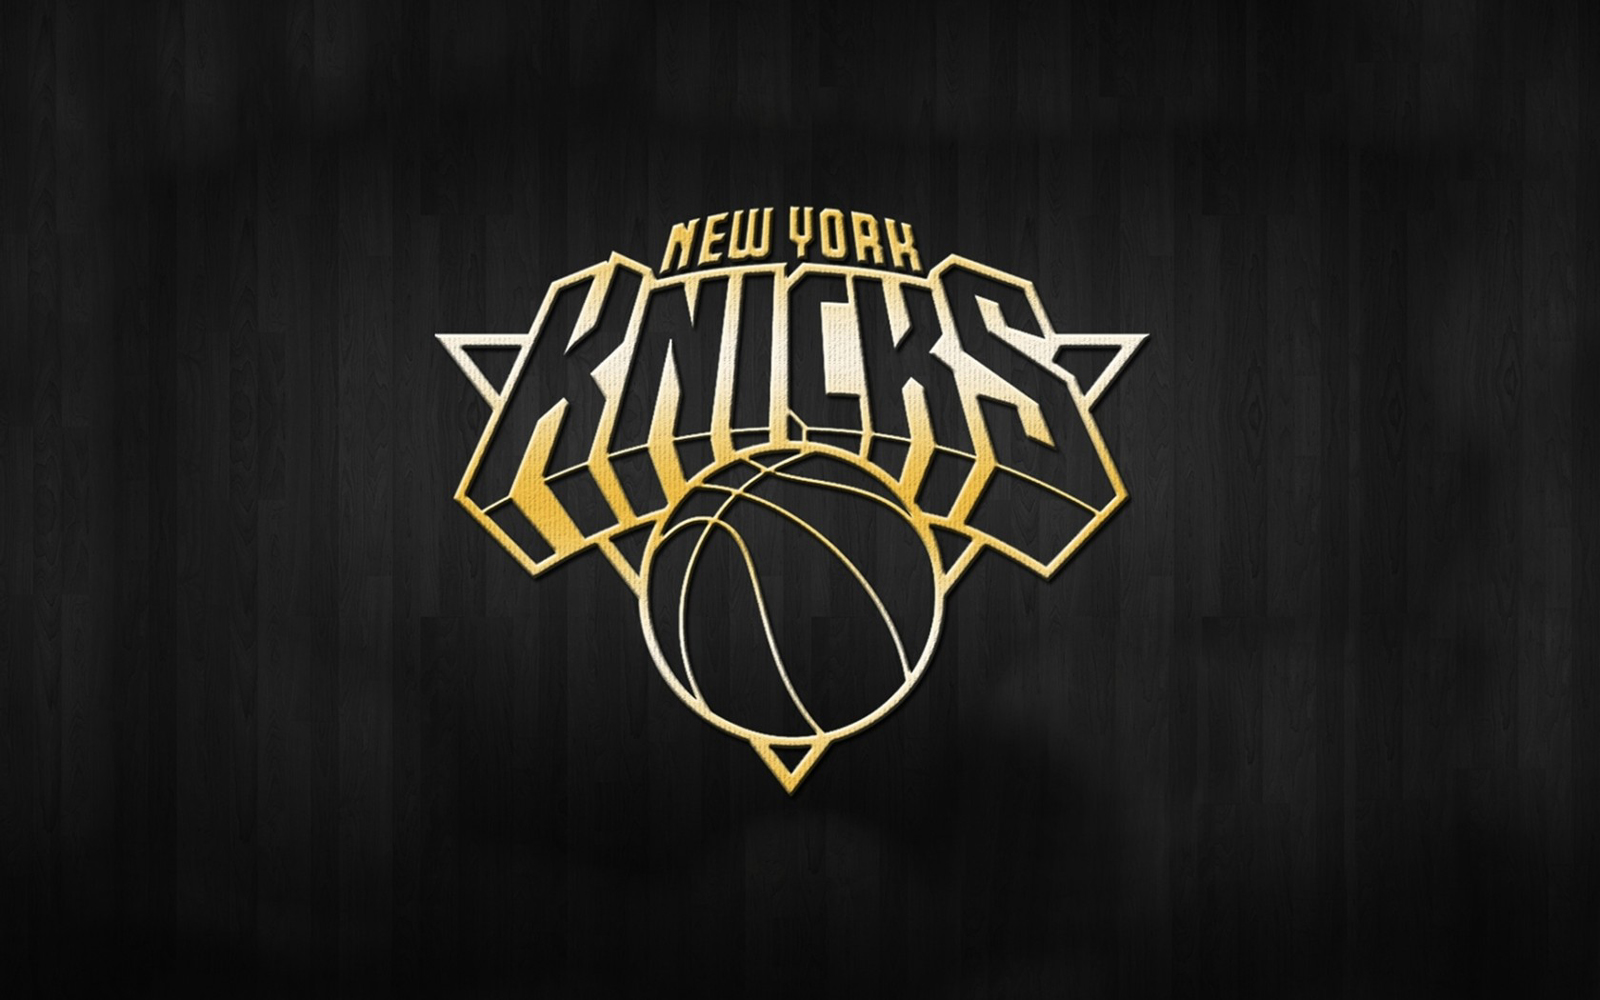 http://1.bp.blogspot.com/-Tejy4rvg-mw/UPQ3wt68piI/AAAAAAAAJ24/_DkEabmo0r4/s1600/New_York_Knicks_2013_Logo_NBA_USA_Hd_Desktop_Wallpaper_citiesandteams.blogspot.com.jpg